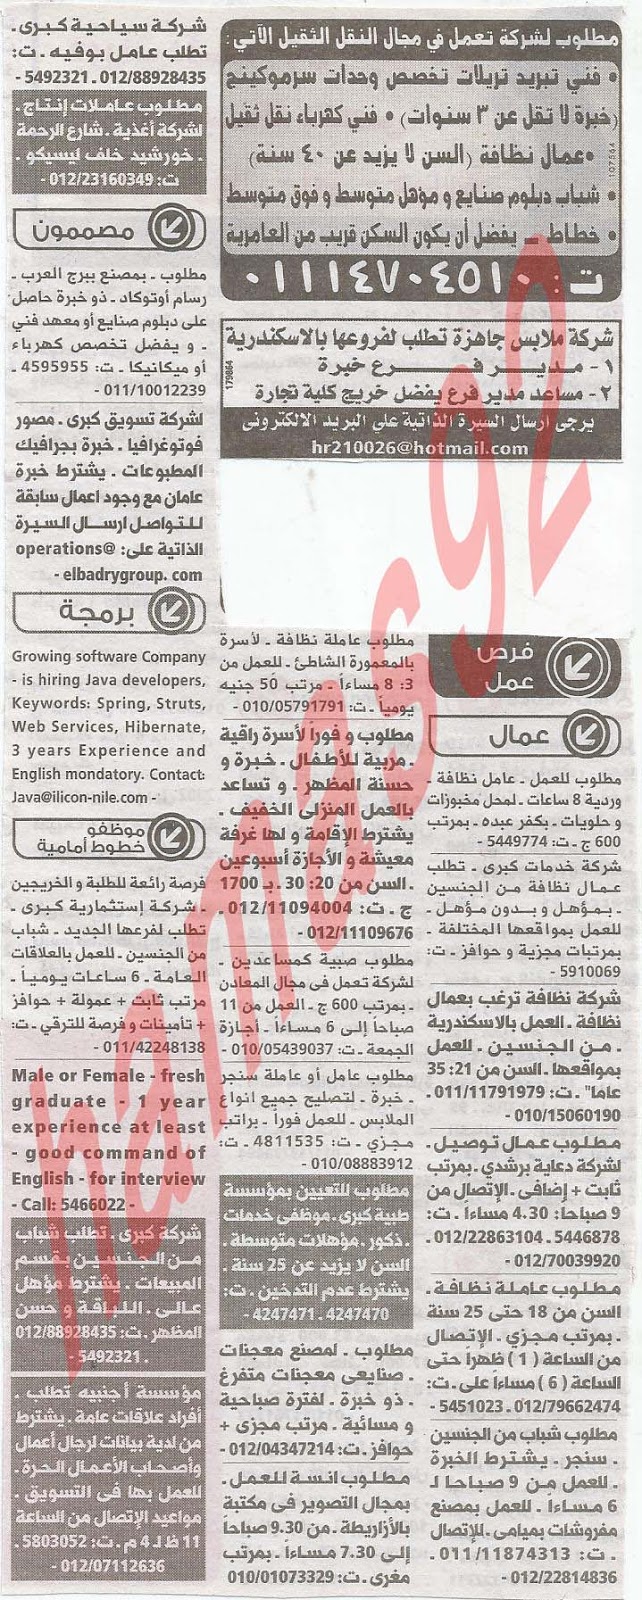 وظائف جريدة الوسيط الاسكندرية الاثنين 11/2/2013 %D9%88+%D8%B3+%D8%B3+6